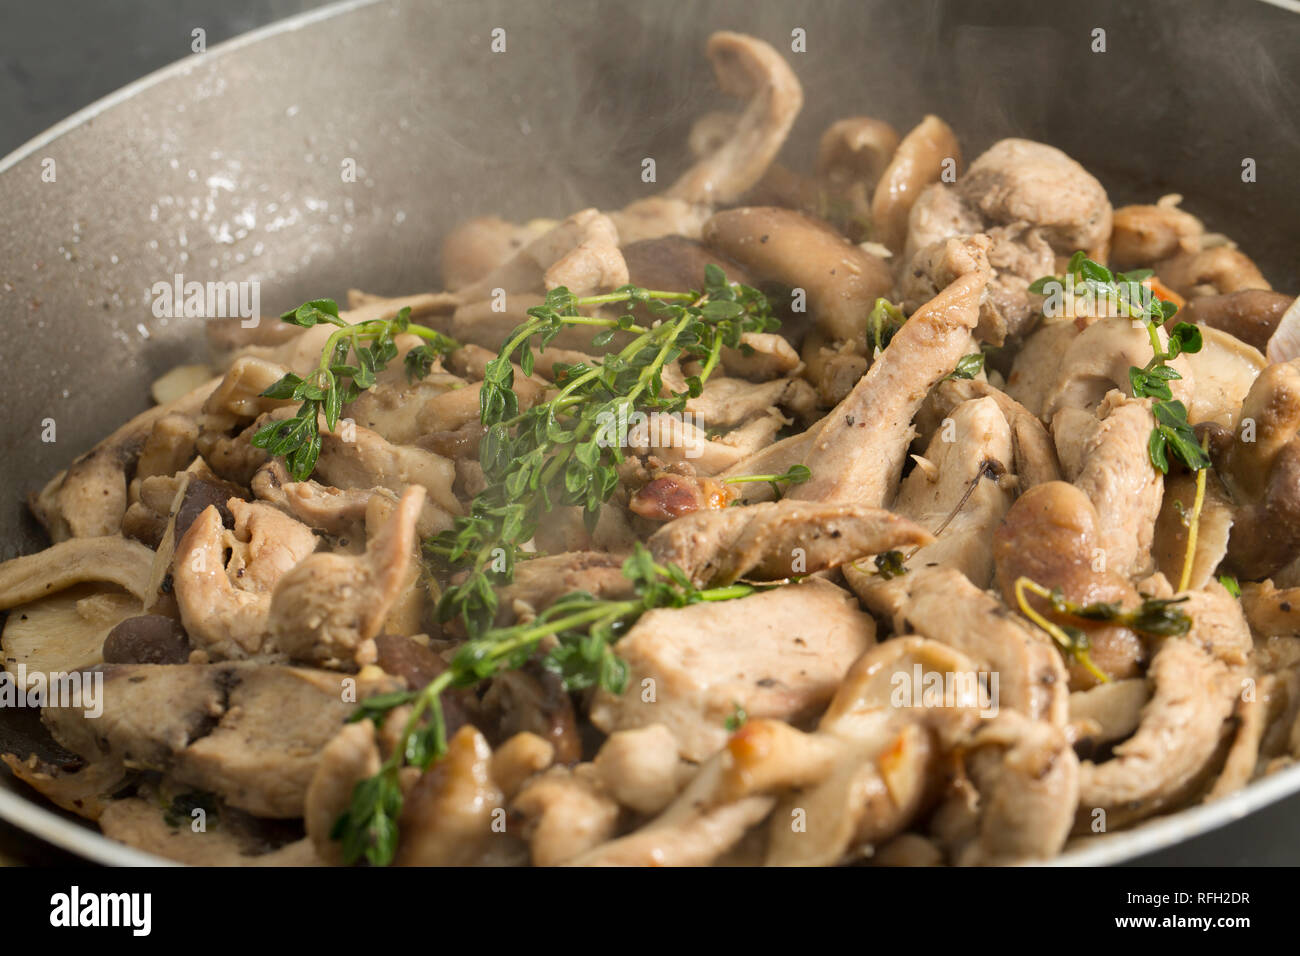 Filet de faisan cuisiné maison coupé en lanières et sauté avec de l'ail, des champignons shiitake, de l'huile d'huile et du thym frais. Dorset Angleterre Royaume-Uni Banque D'Images